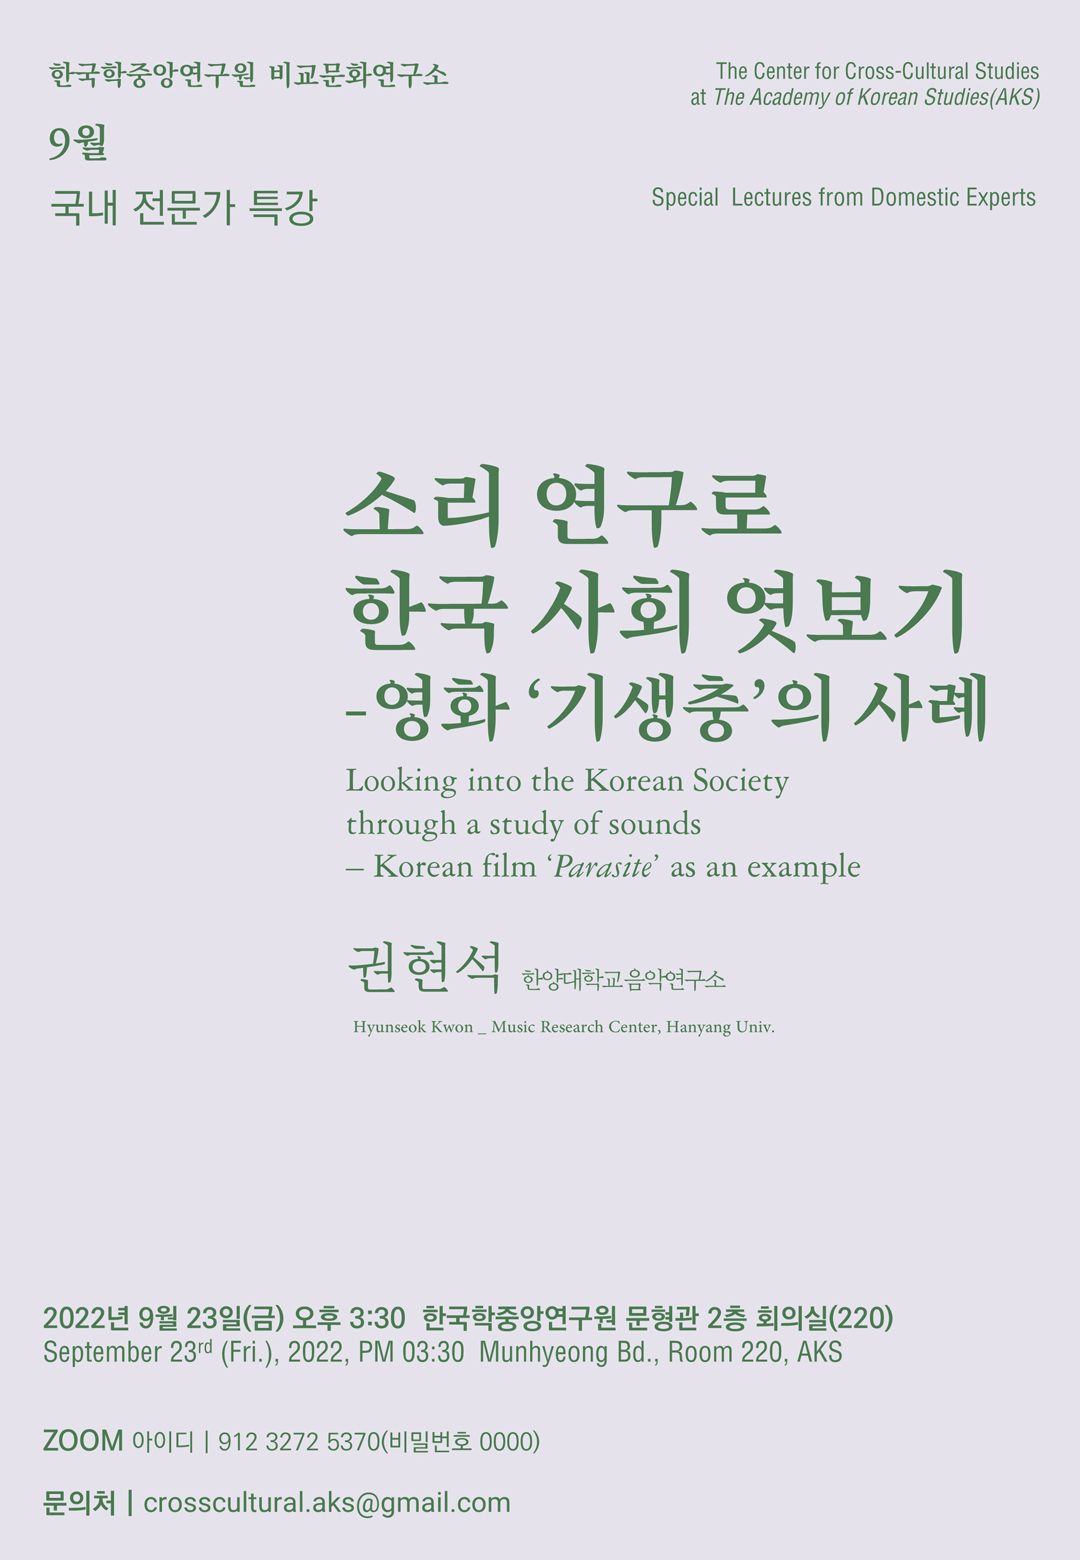 한국학중앙연구원 비교문화연구소, 9월 국내 전문가 특강, The Center for Cross-Cultural Studies at The Academy of Korean Studies(AKS), Special Lectures from Domestic Experts, 소리 연구로 한국 사회 엿보기 -영화 '기생충'의 사례, Looking into the korean Society through a study of sounds - Korean film 'Parasite' as an example, 권현석(한양대학교 음악연구소) / Hyunseok Kwon_Music Research Center, Hanyang Univ. 2022년 9월 23일(금) 오후 3:30 한국학중앙연구원 문형관 2층 회의실(220) / September 23rd (Fri.), 2022, PM 03:30 Munhyeong Bd., Room 220, AKS. ZOOM 아이디 : 912 3272 5370(비밀번호 0000), 문의처 : crosscultural.aks@gmail.com